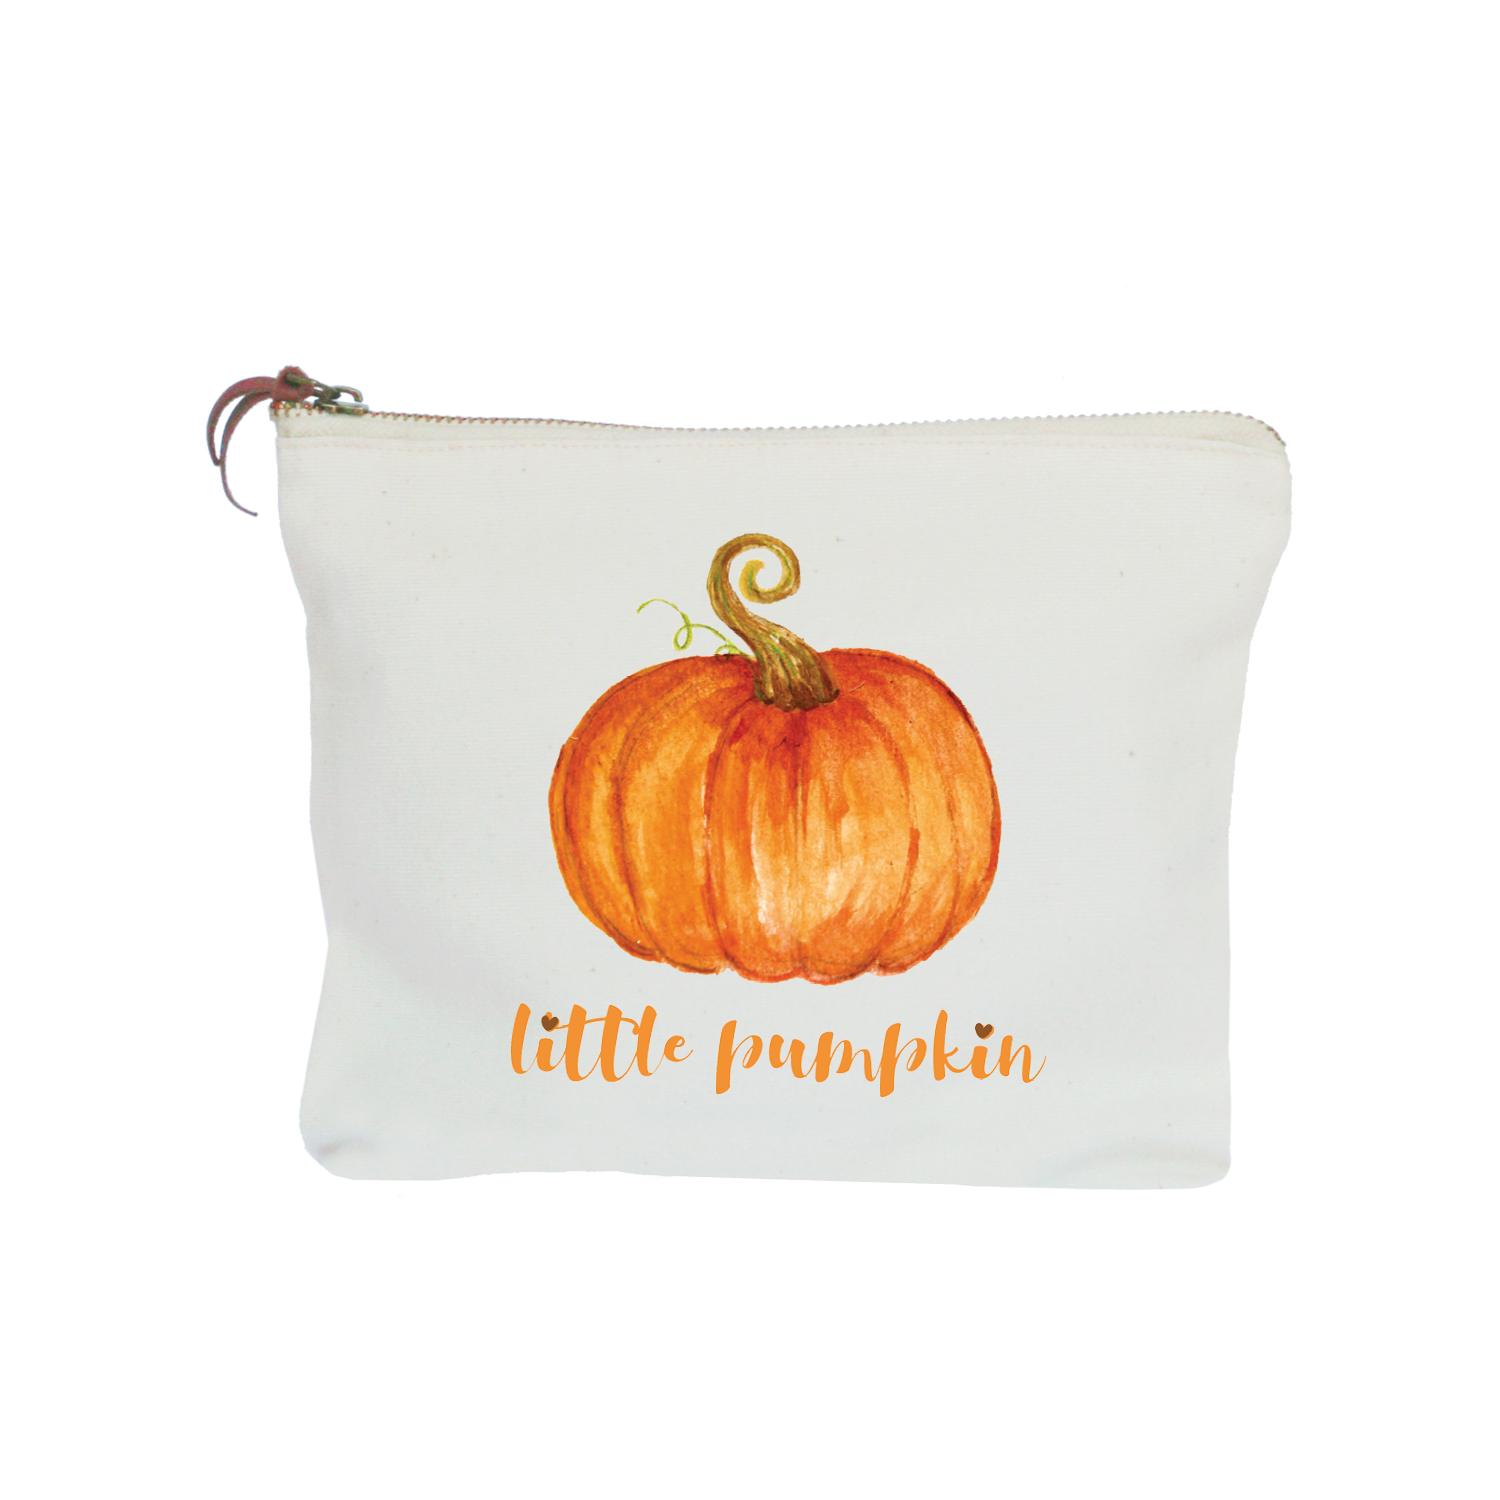 little pumpkin zipper pouch